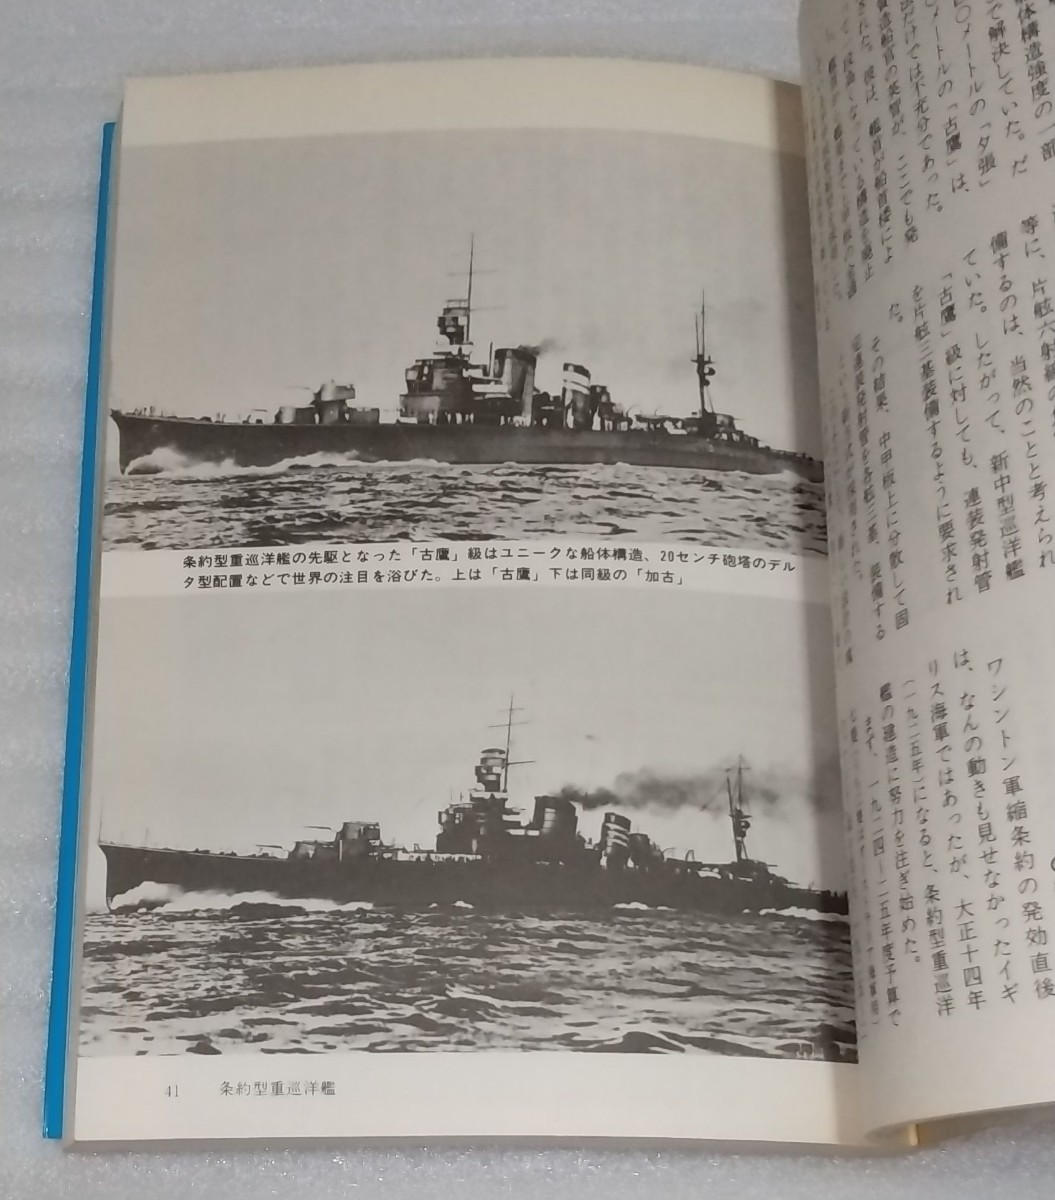 1982昭和57年 第二次世界大戦ブックス92 海軍重巡戦隊 激闘太平洋！巡洋艦の航跡 日本 全滅 写真 利根大破 自衛隊ミサイル護衛艦は延長線上_※モノクロ写真の掲載があります。